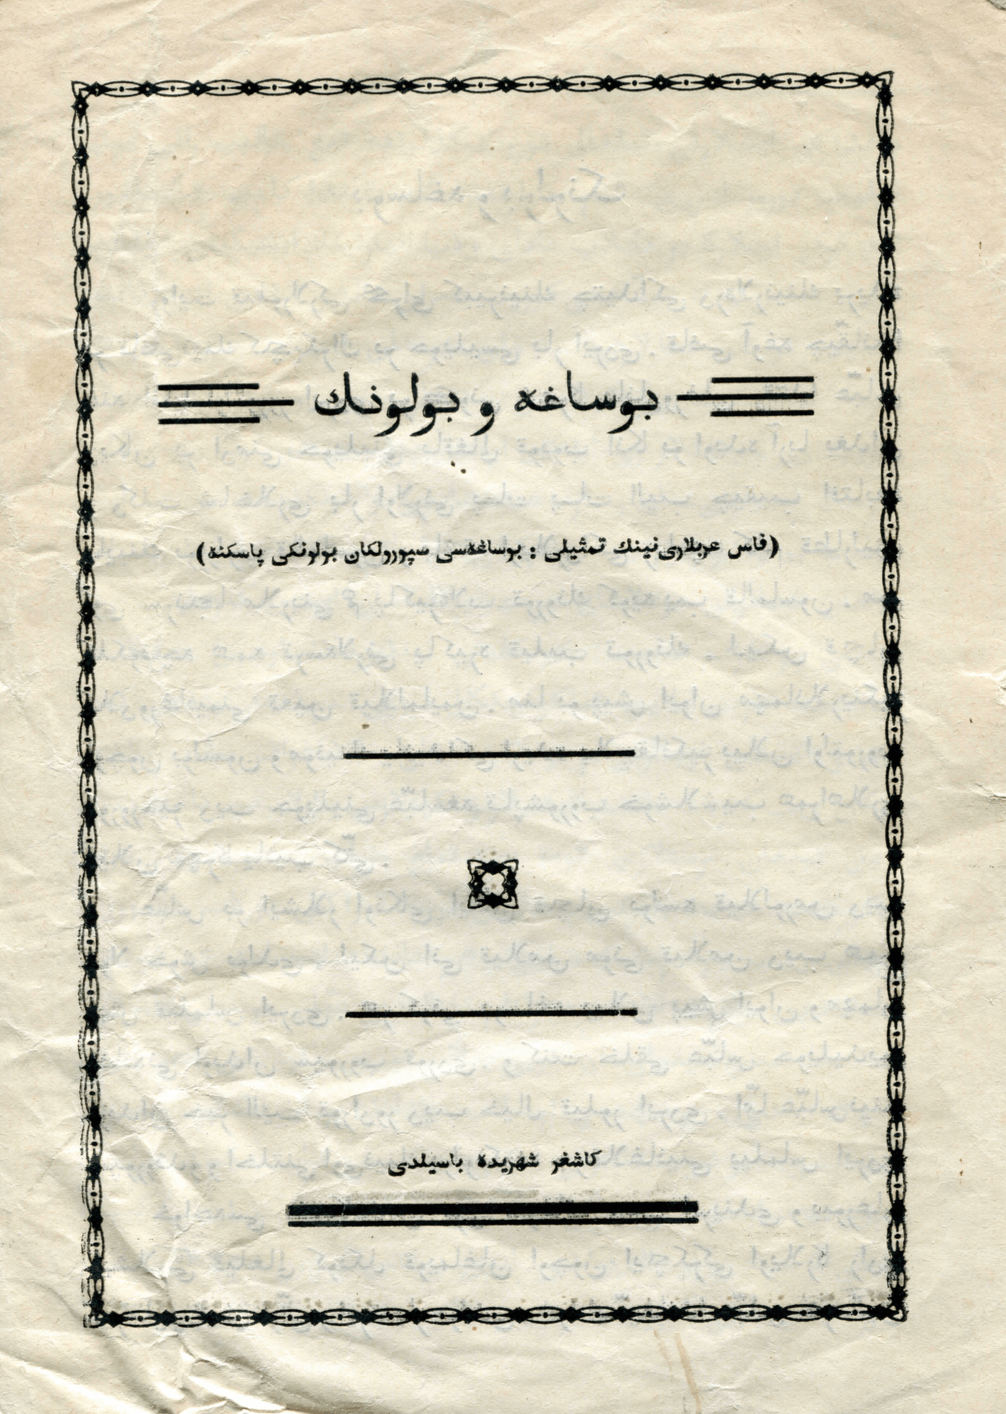 Kashgar prints